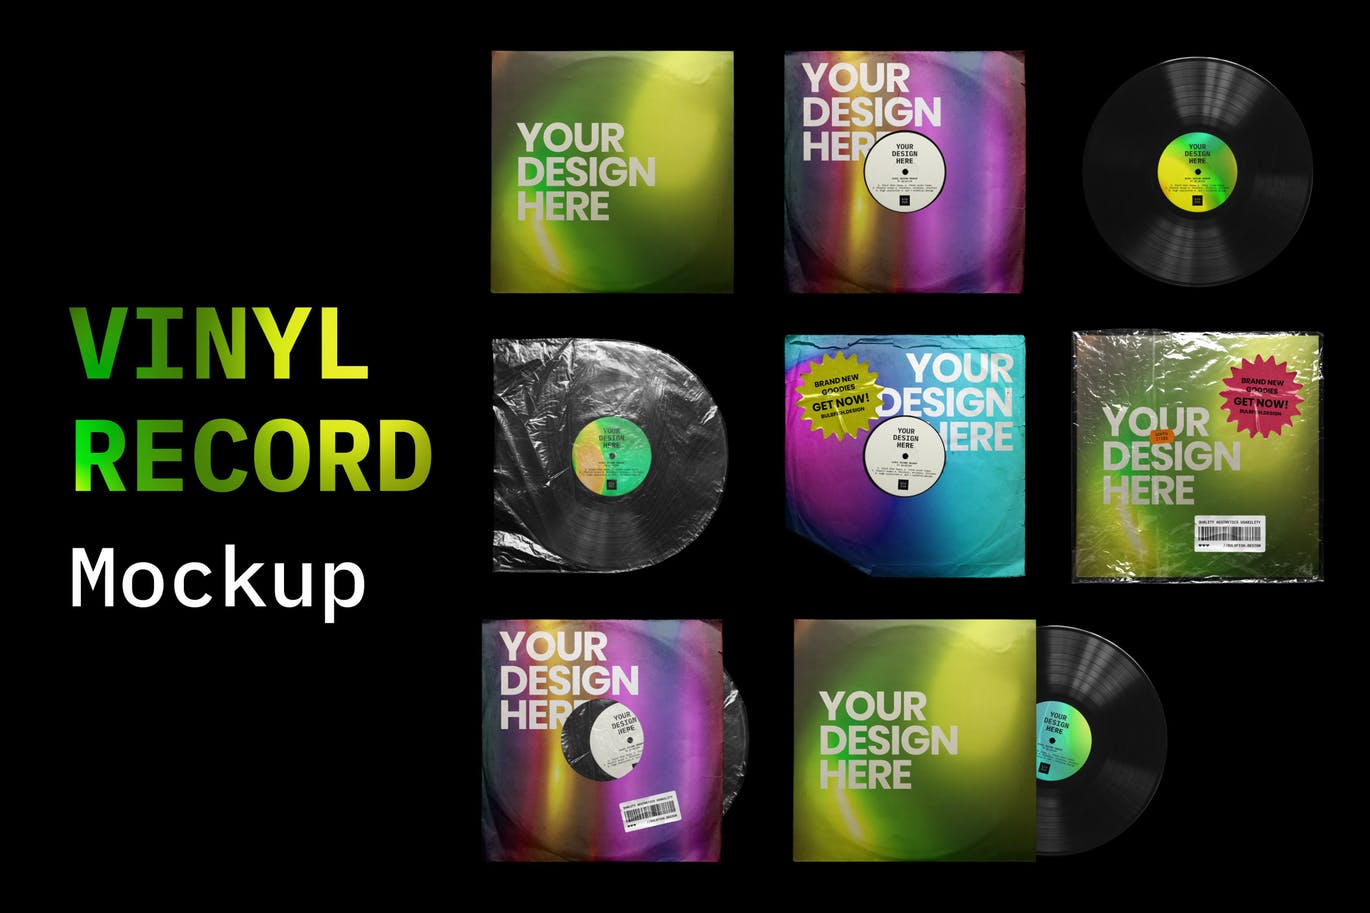 乙烯基唱片包装盒及封面设计图蚂蚁素材精选模板 Vinyl Record Mockup插图